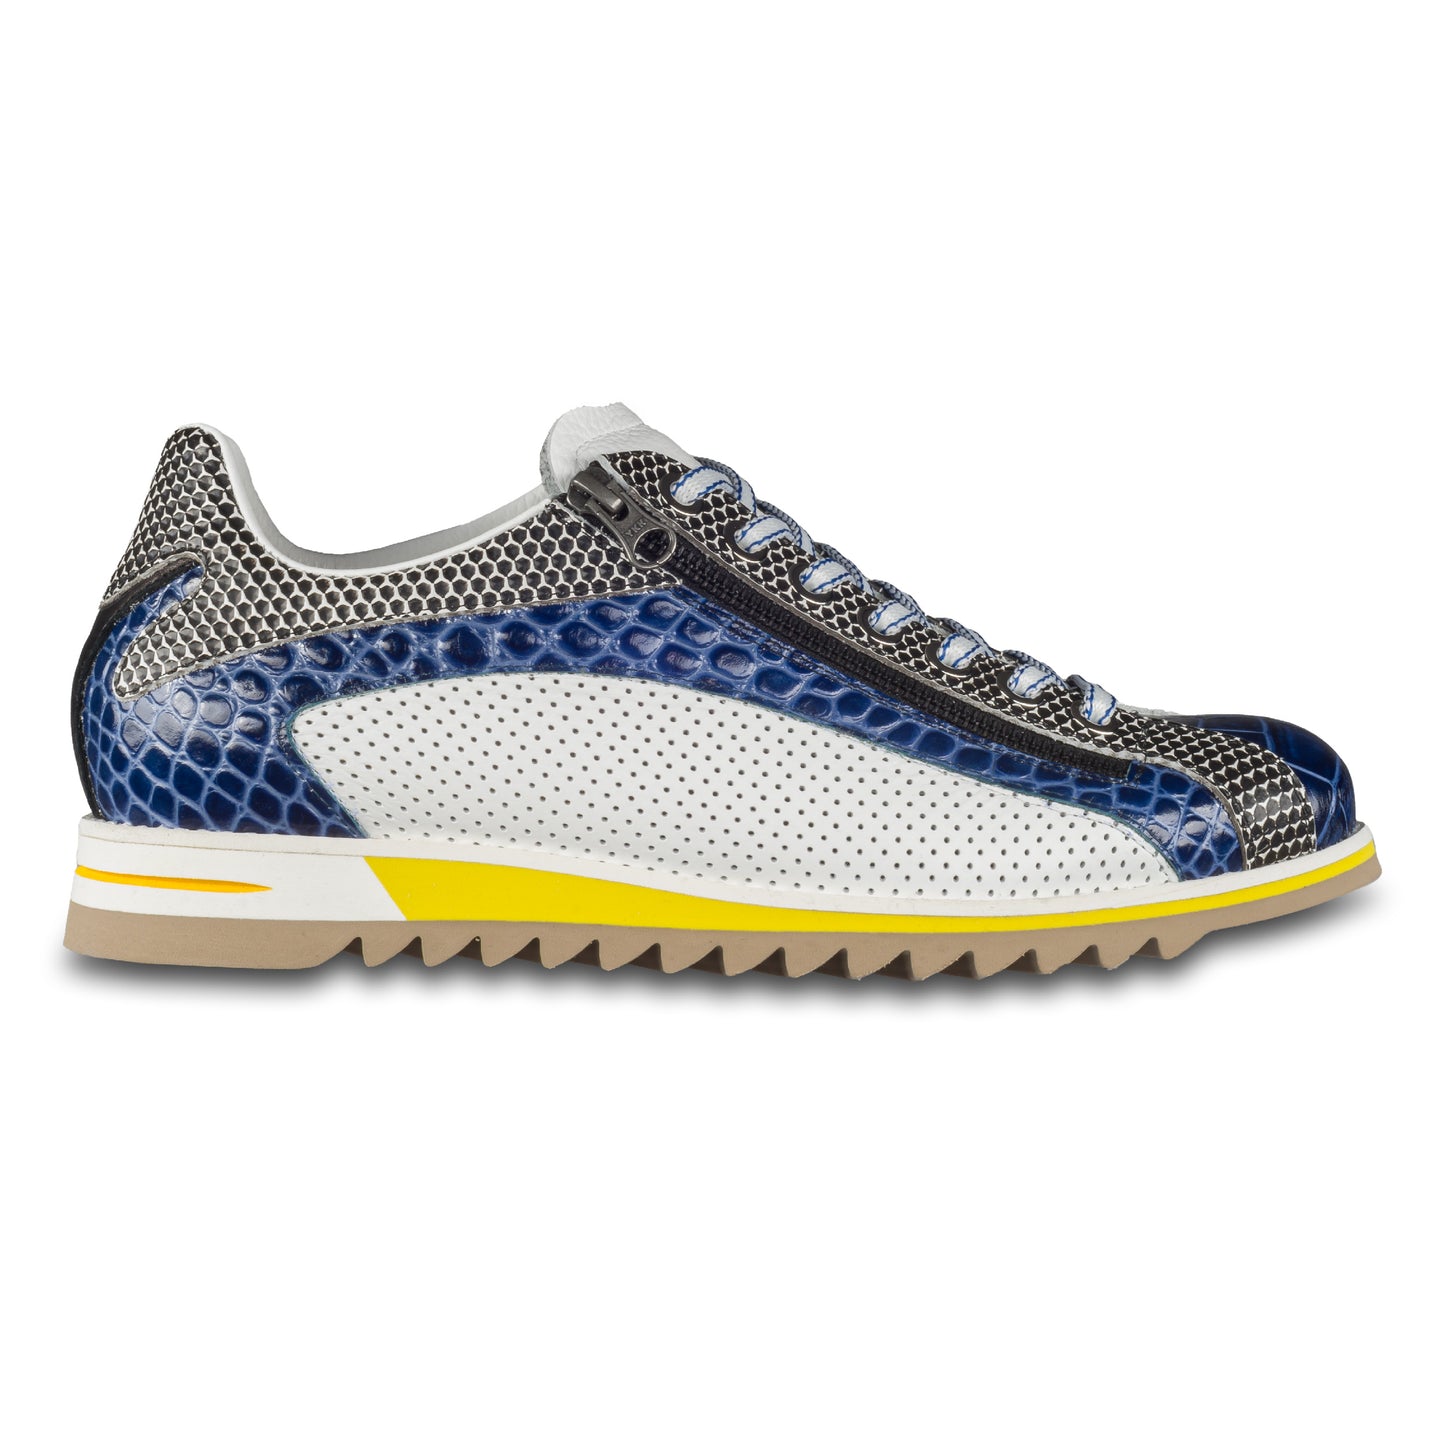 Lorenzi Herren Leder-Sneaker mit raffinierter Prägung und Reißverschluß, in blau / schwarz / weiß. Handgefertigt. Seitliche Ansicht der Außenseite rechter Schuh.